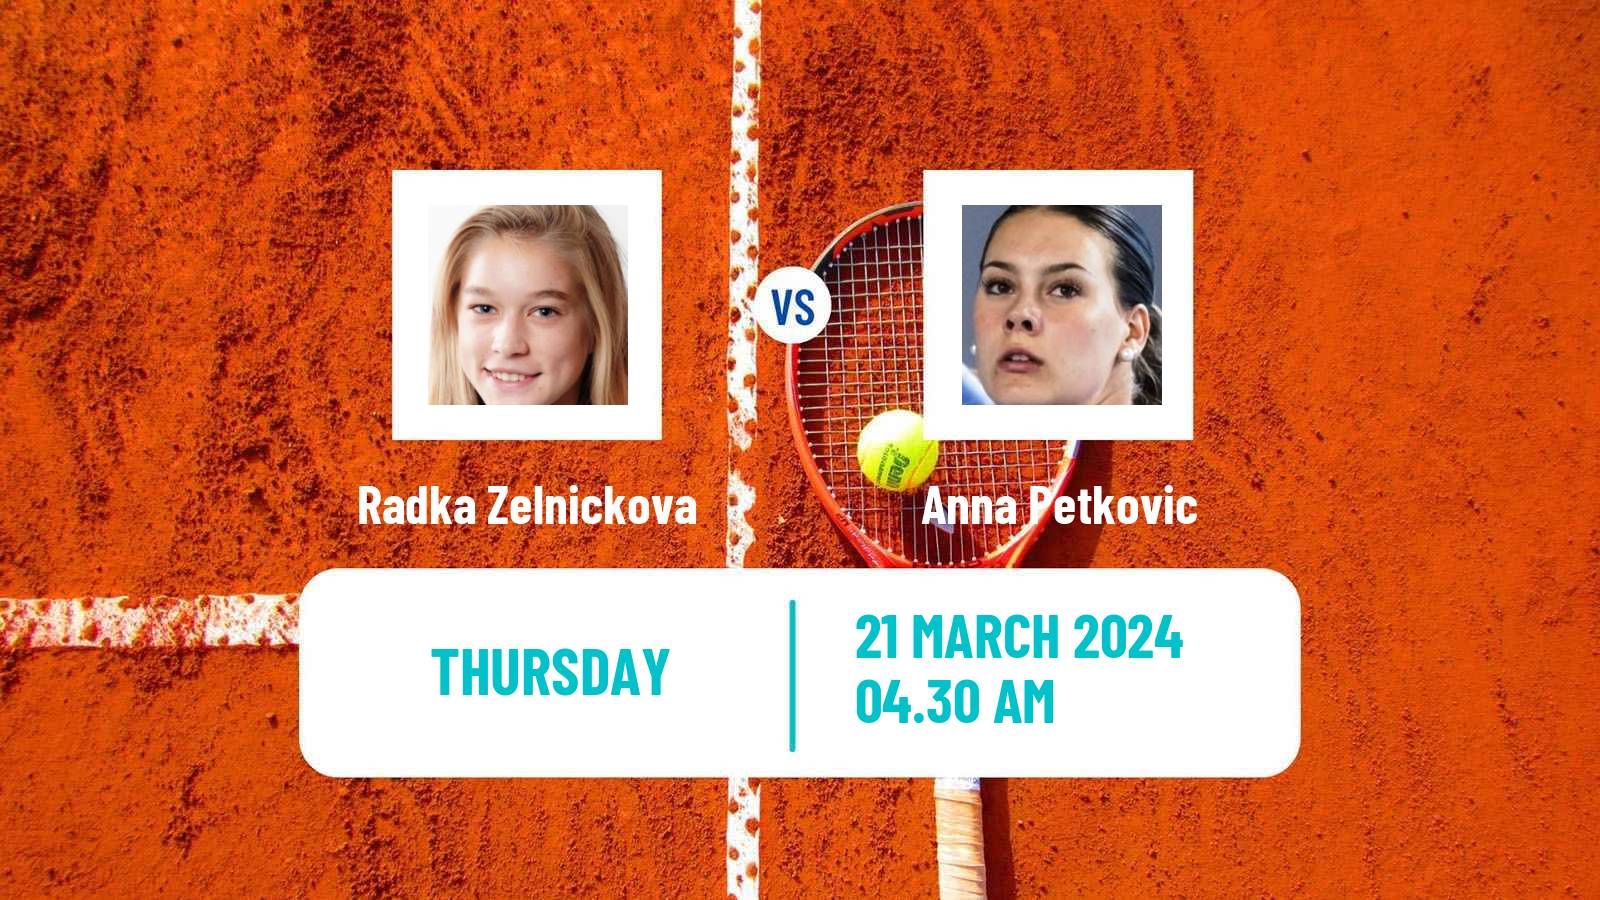 Tennis ITF W15 Monastir 10 Women Radka Zelnickova - Anna Petkovic